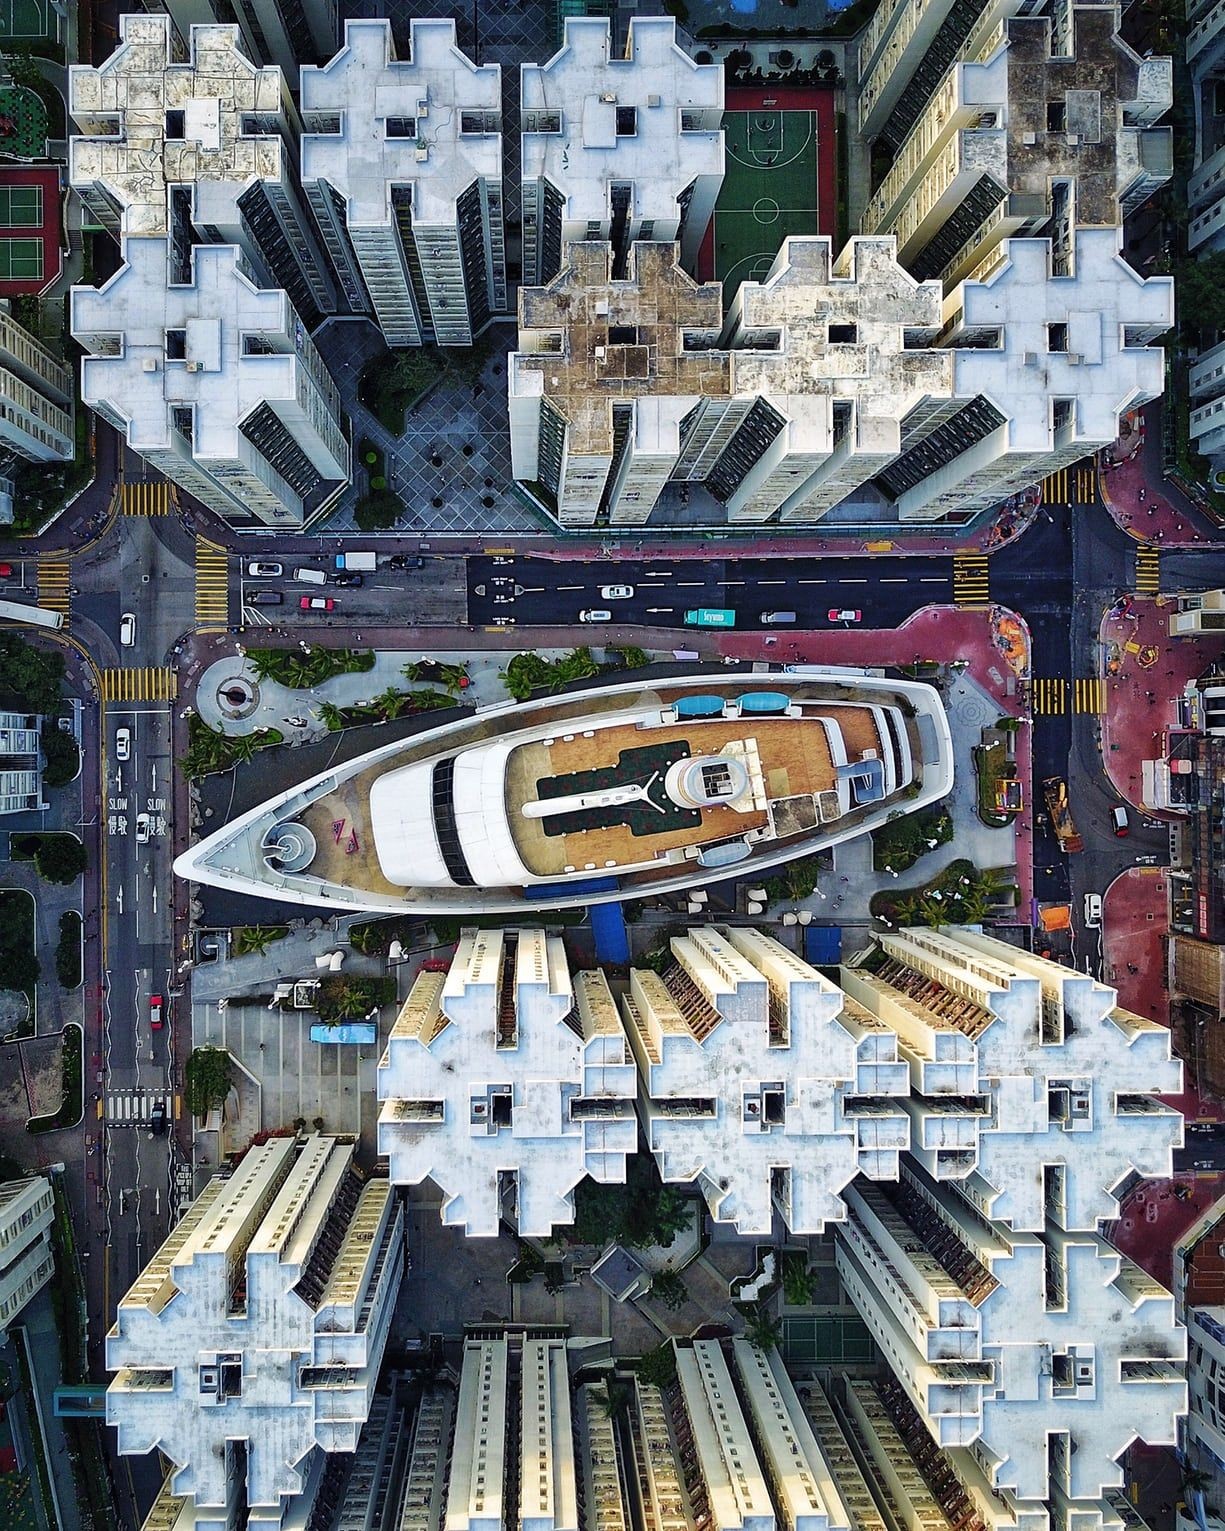 Торговый центр в форме корабля, Гонконг, Китай